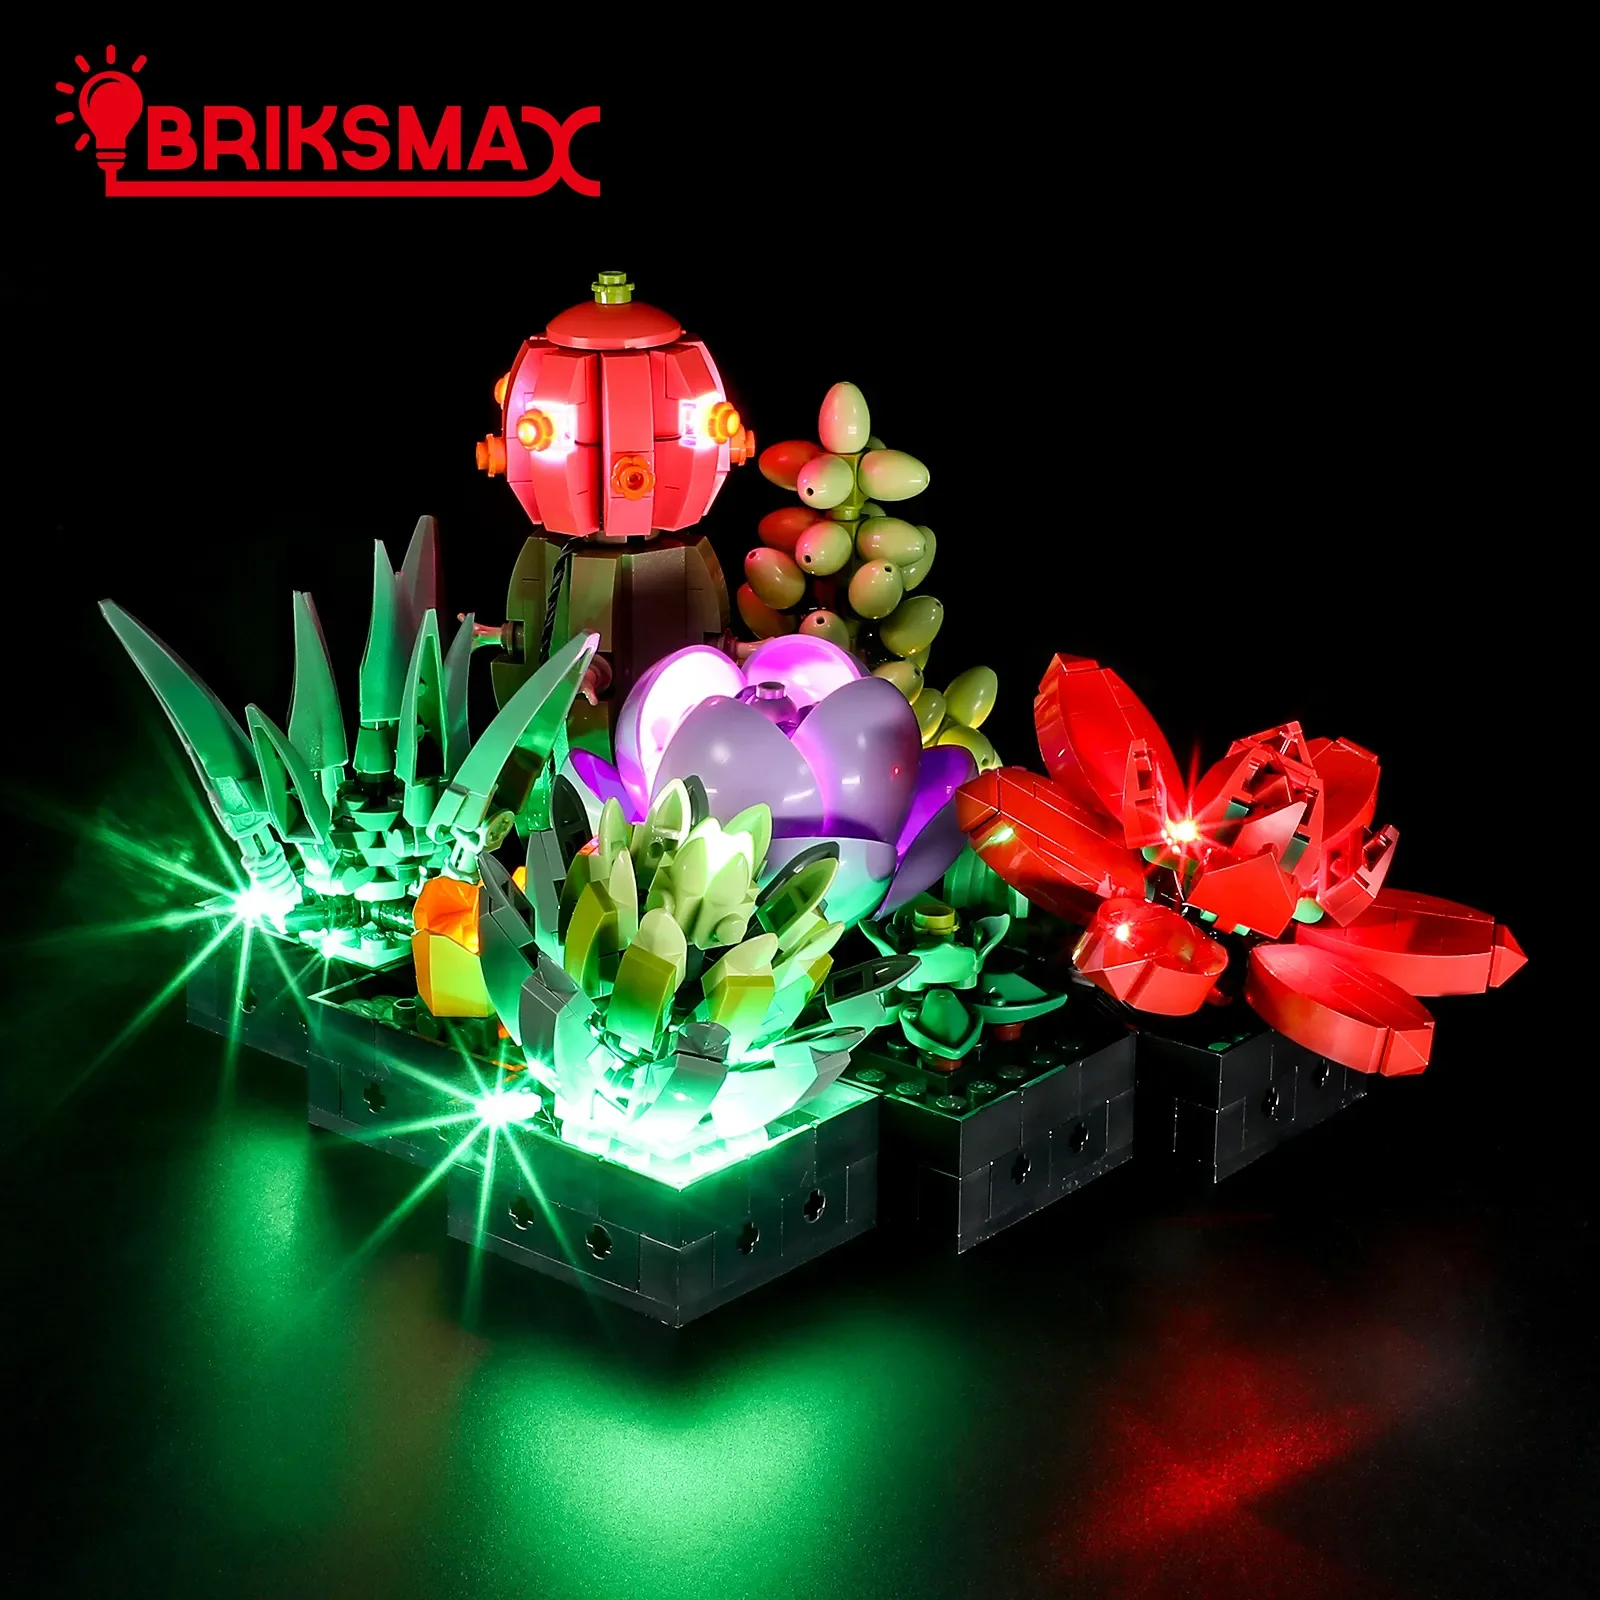 

Набор строительных блоков BriksMax со светодиодной подсветкой для 10309 суккулентов (без модели), игрушки для детей на день рождения и Рождество